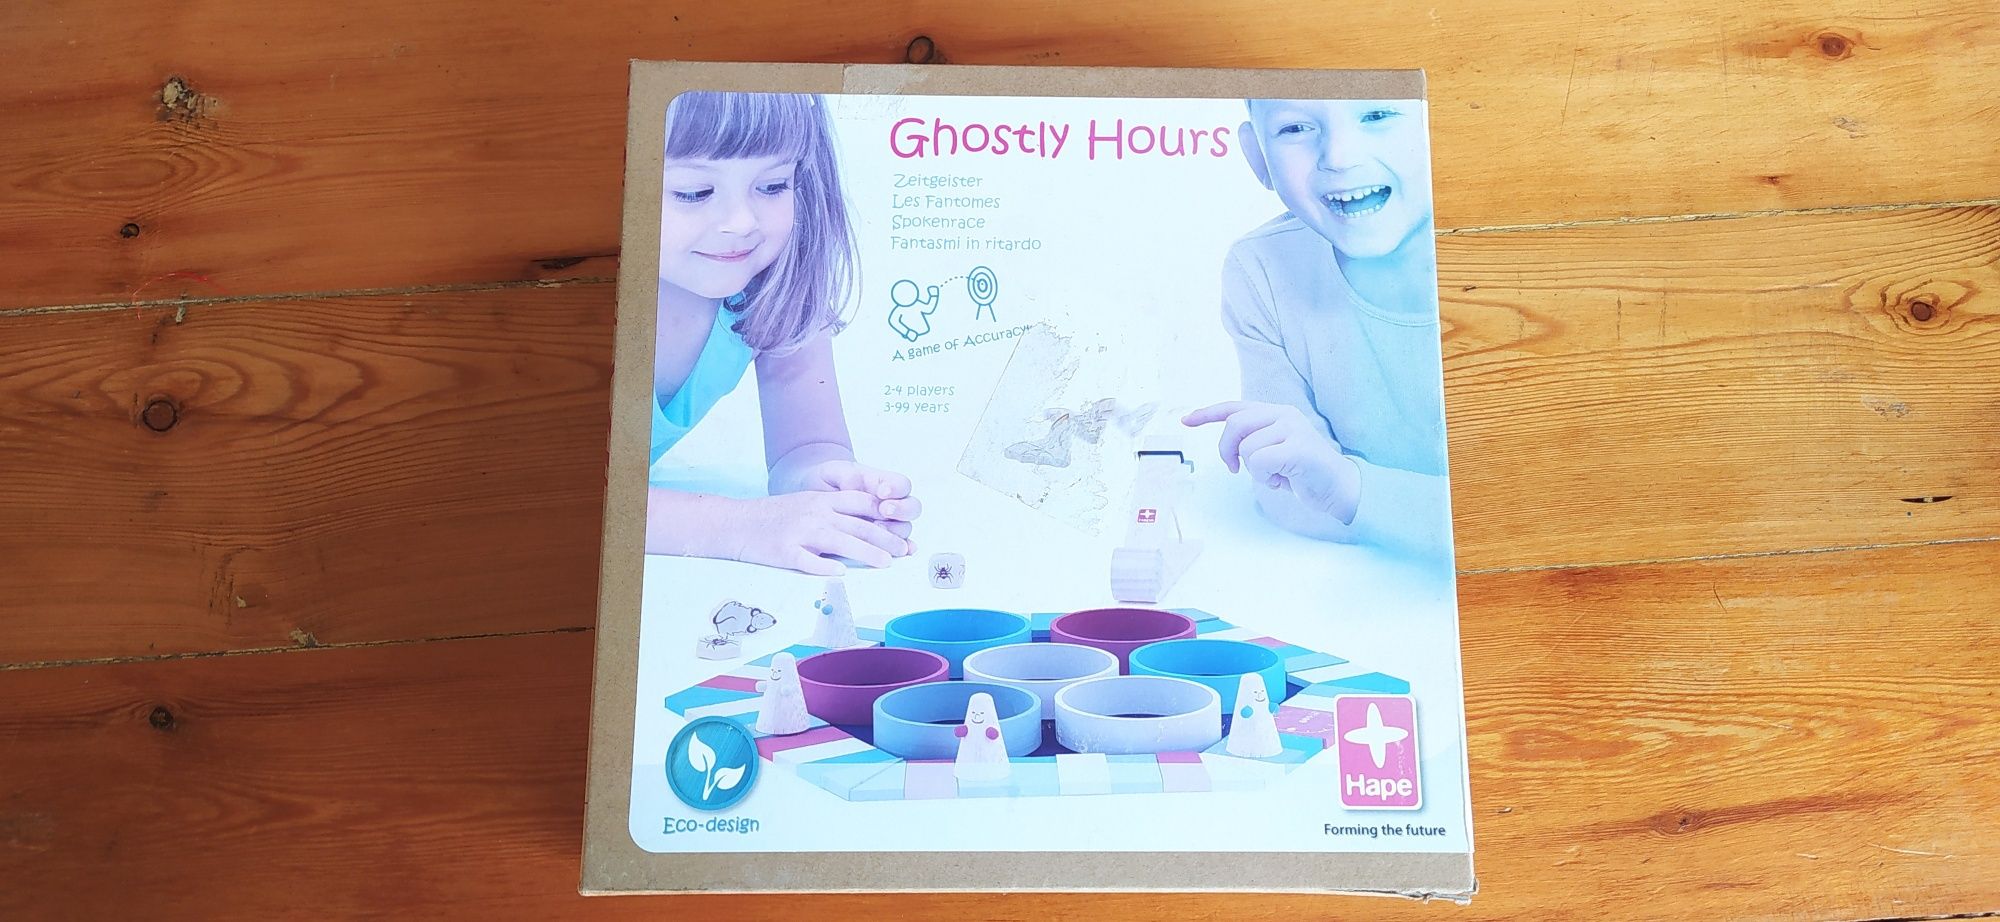 Gra planszowa przestrzenna Ghostly Hours wyścig duchów Hape